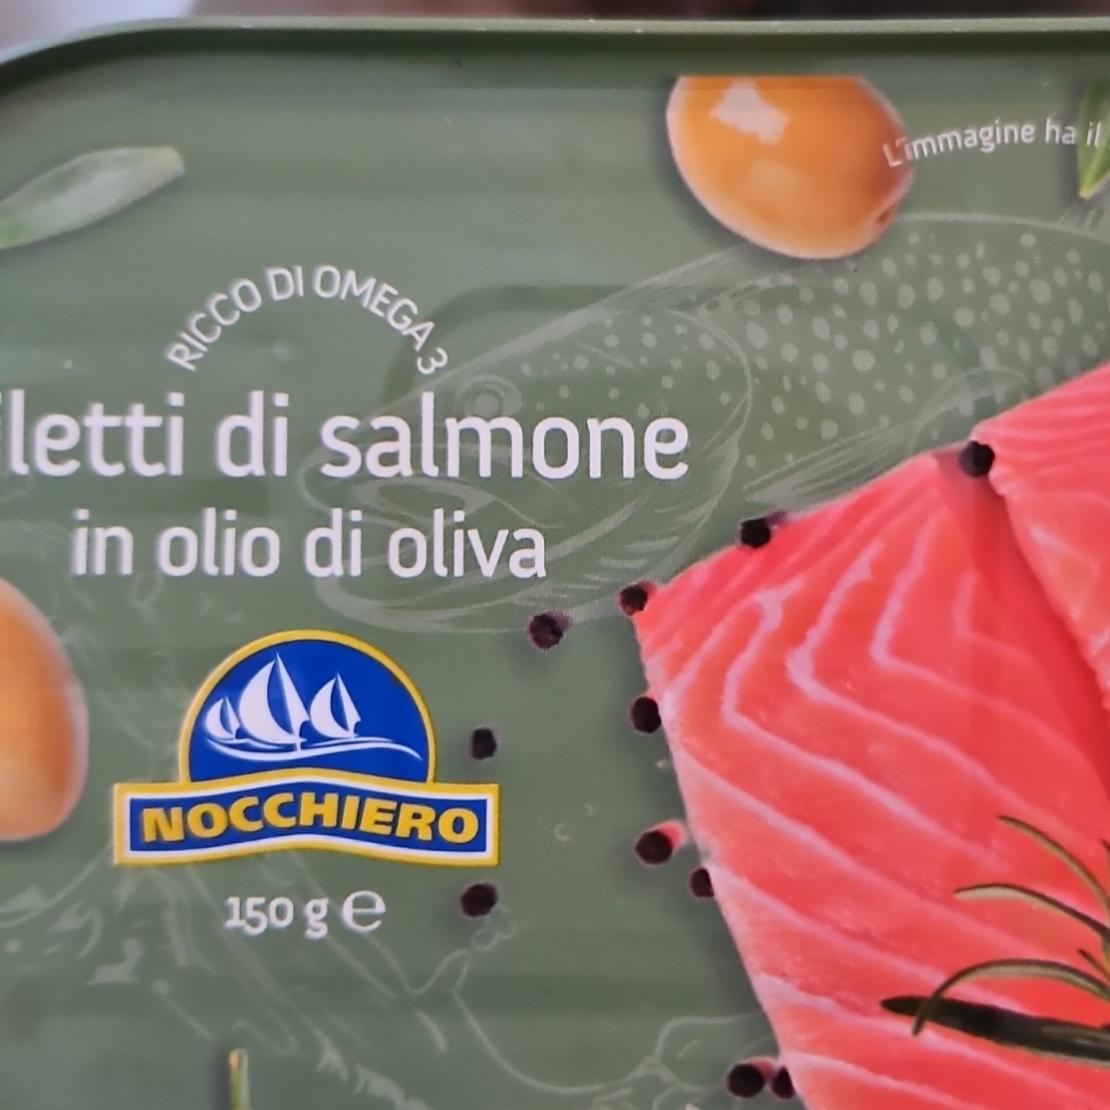 Фото - Филе лосося в оливковом масле Mocchiero